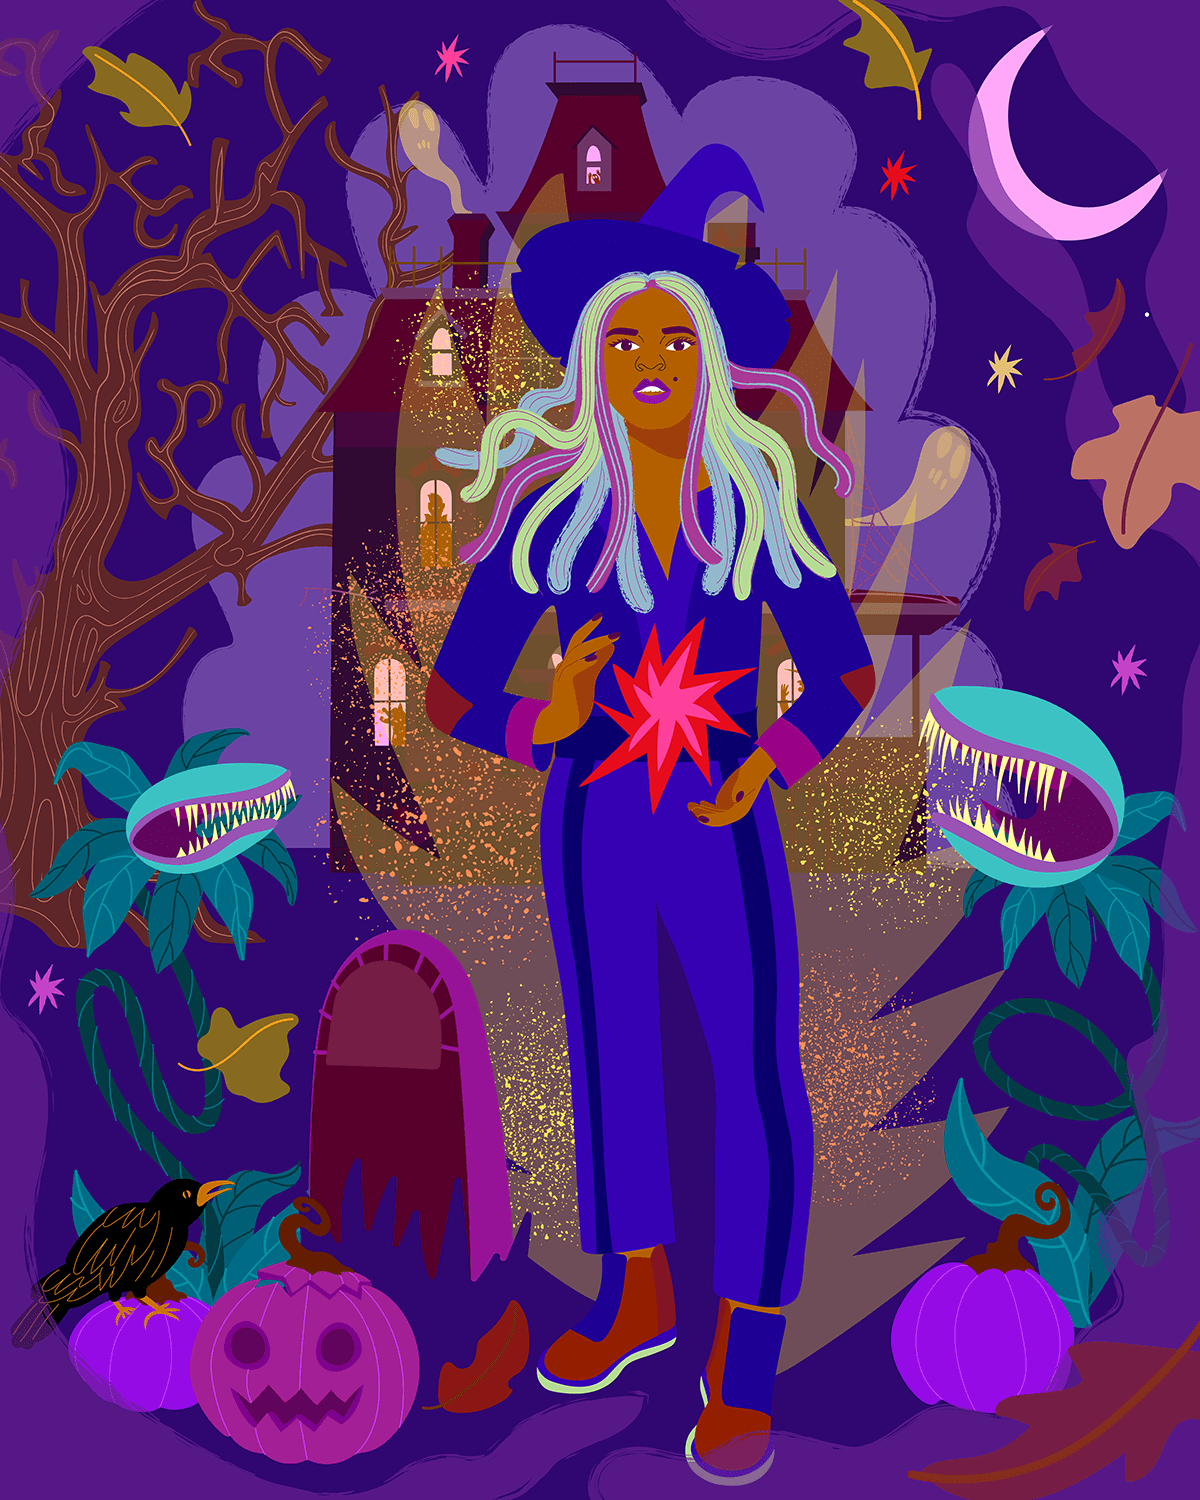 Illustration of an Immersive Hallowen